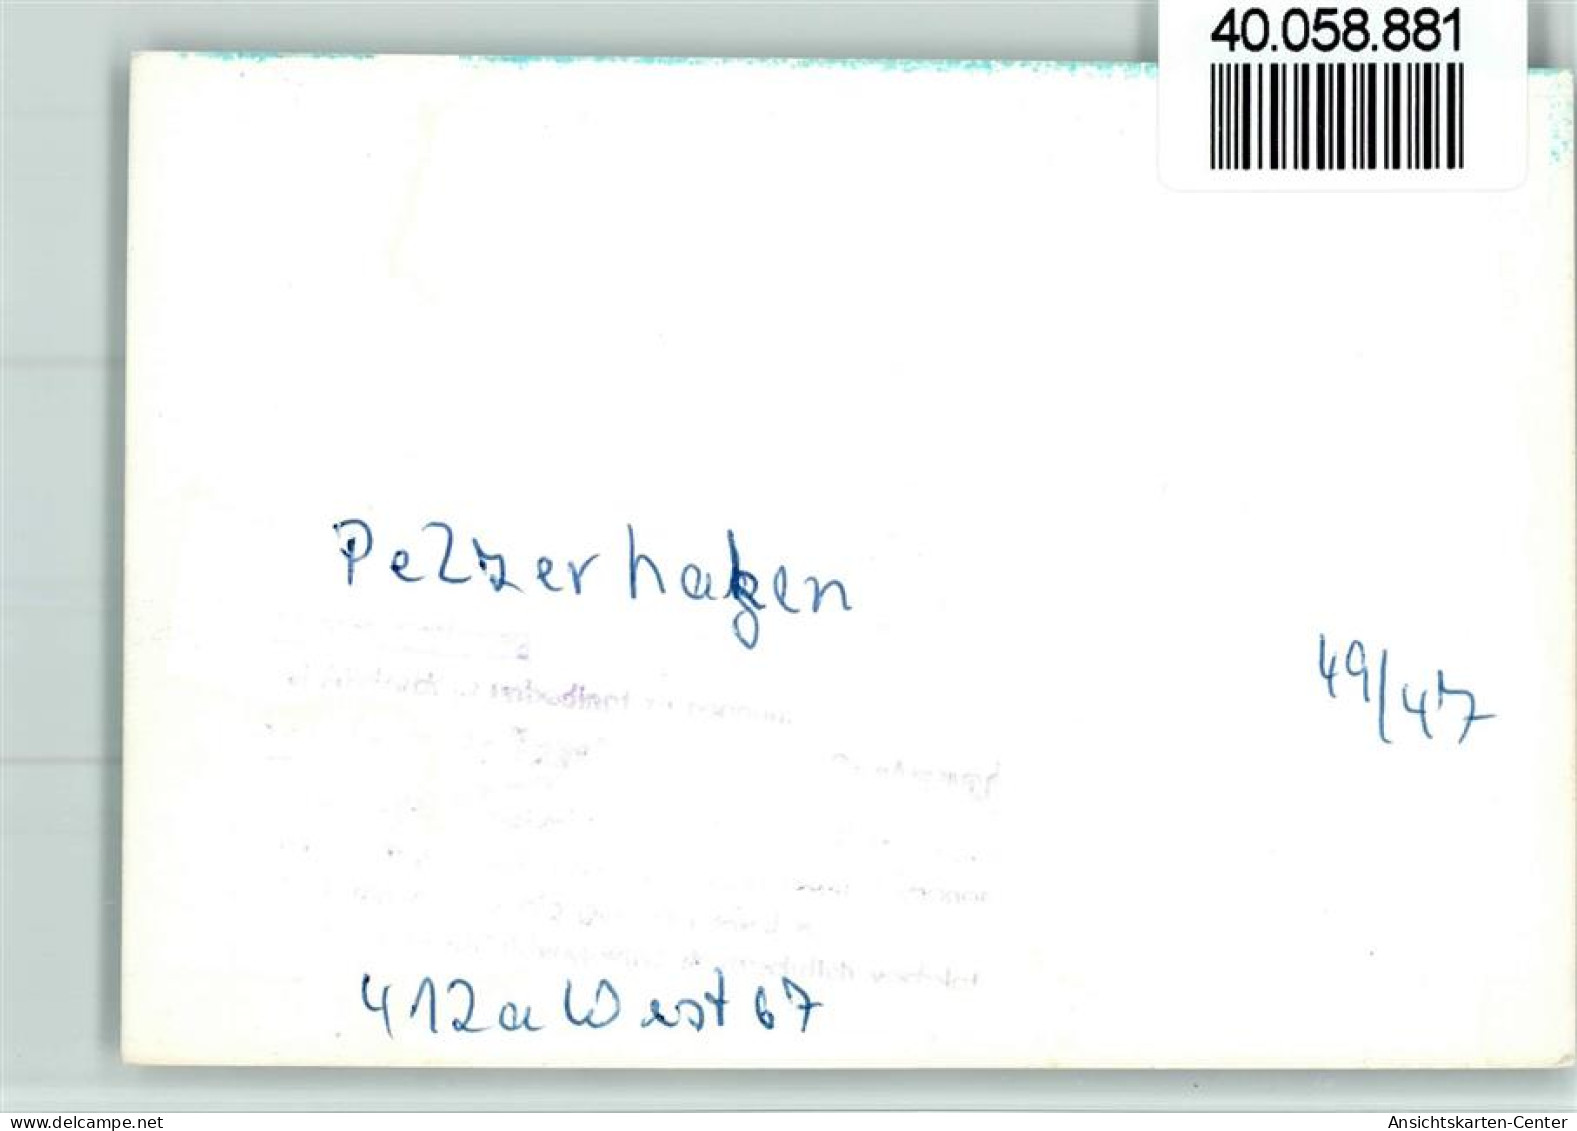 40058881 - Pelzerhaken - Neustadt (Holstein)